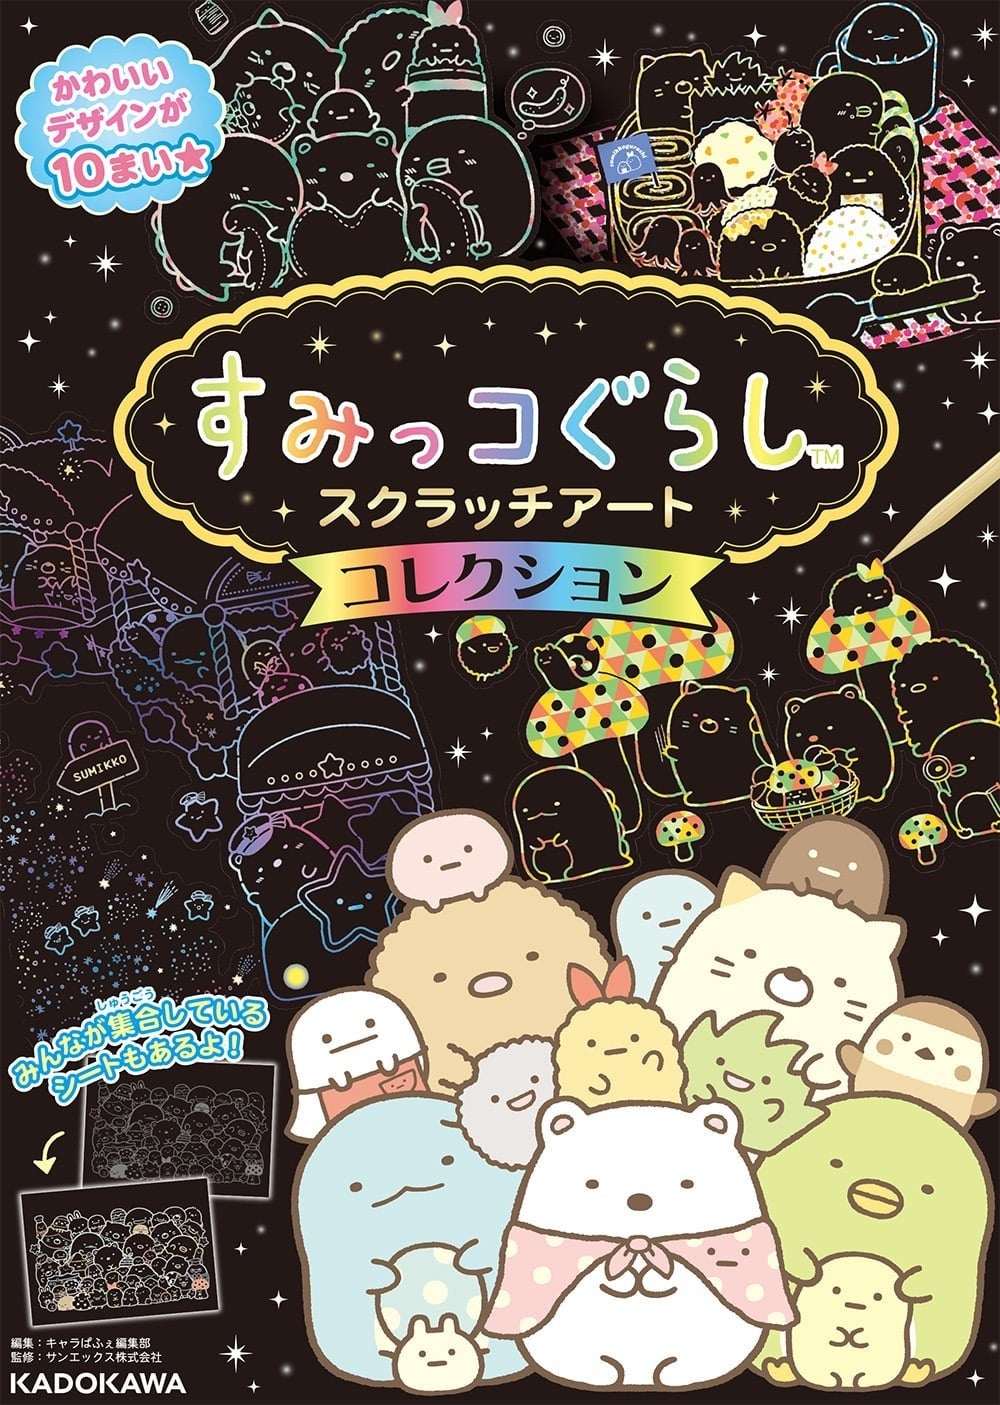 「すみっコぐらし」10周年を記念したプレゼントキャンペーンがスタート‼ KADOKAWA発売の「すみっコぐらし」作品を書店で買って、特別なグッズに応募しよう！